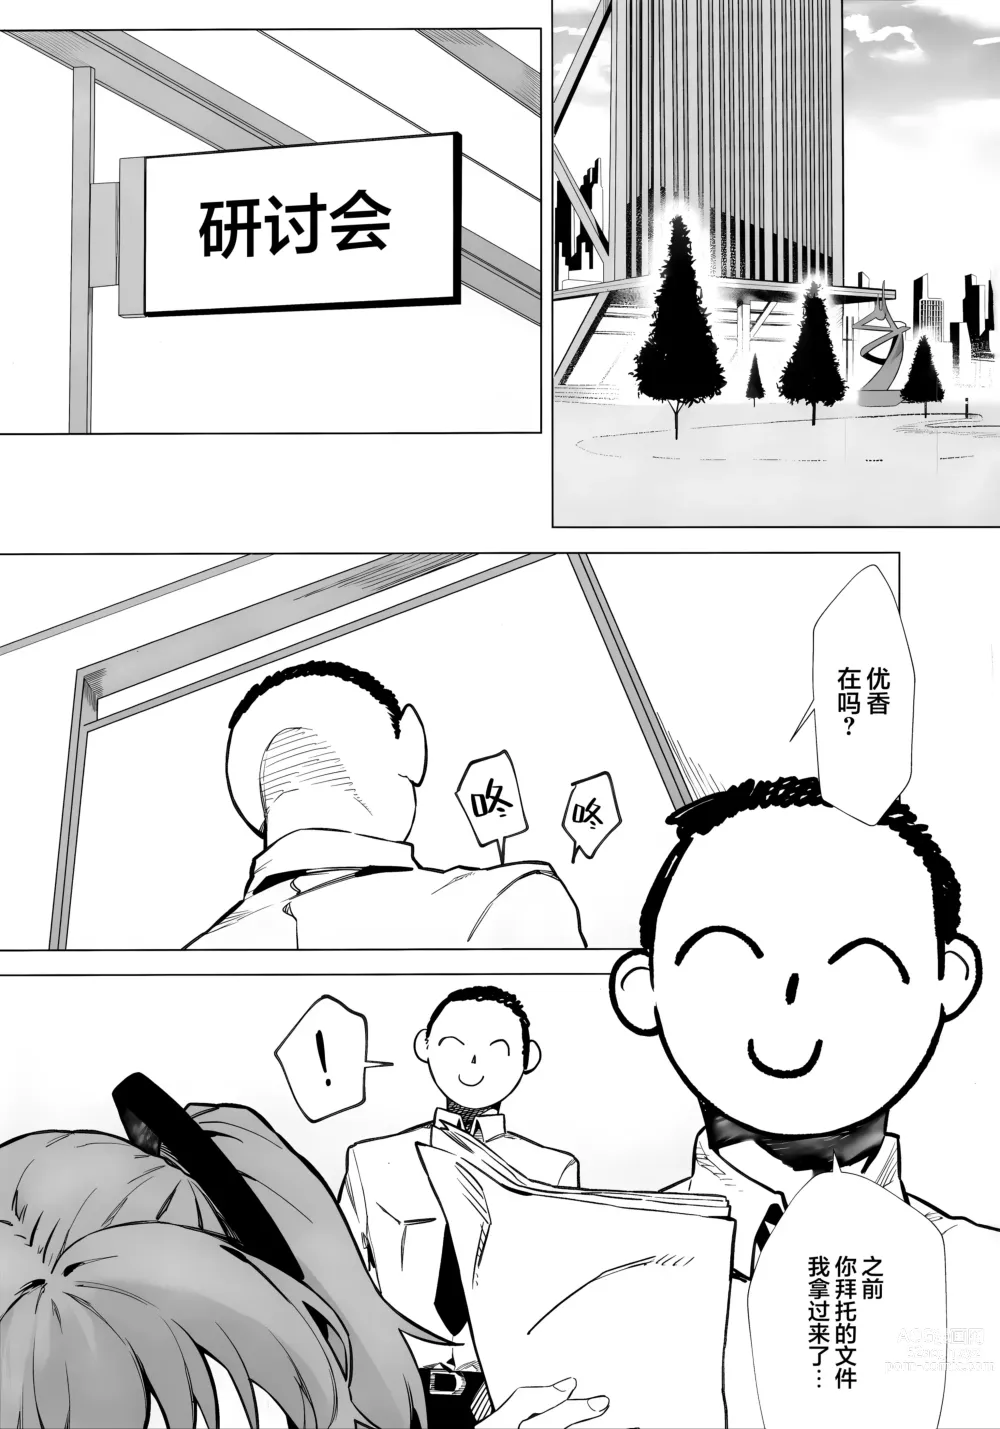 Page 3 of doujinshi 都怪邮箱太可爱了根本忍不住!!